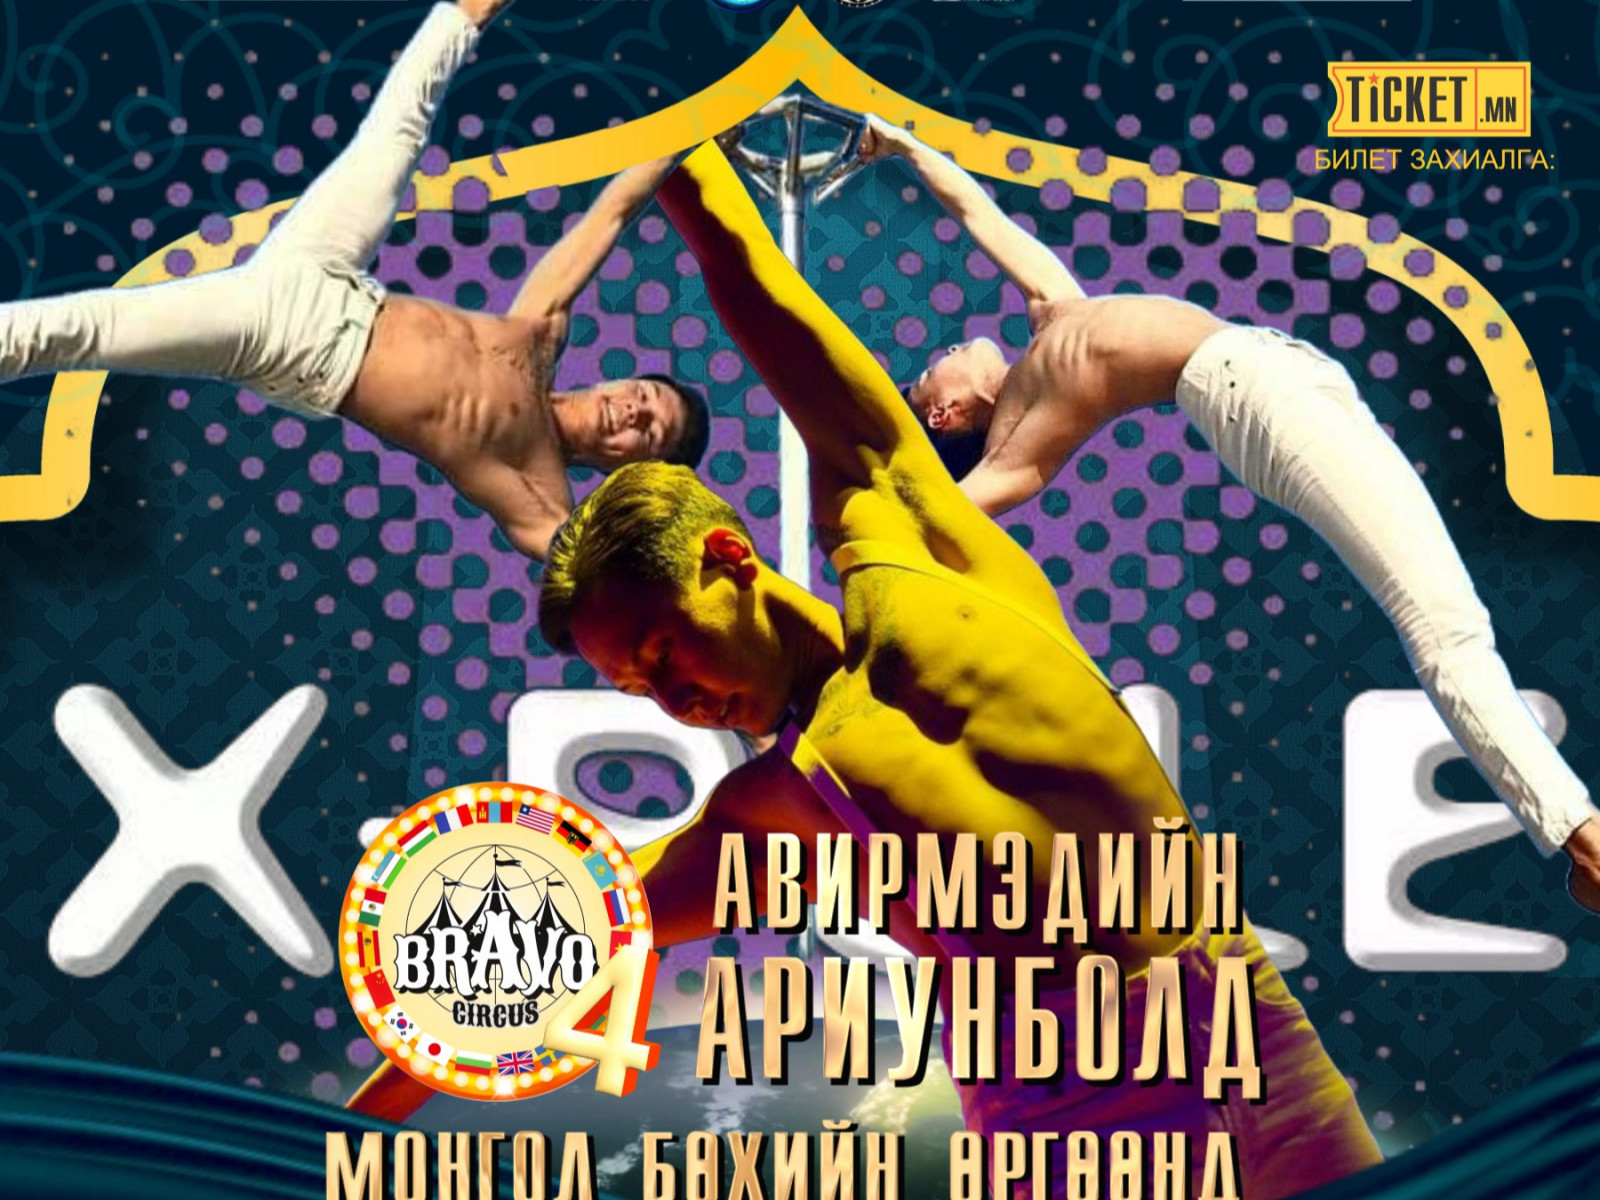 ВИДЕО: “Браво цирк-4" тоглолтод оролцохоор дэлхийд гайхагдсан Монгол циркчид эх орондоо ирлээ